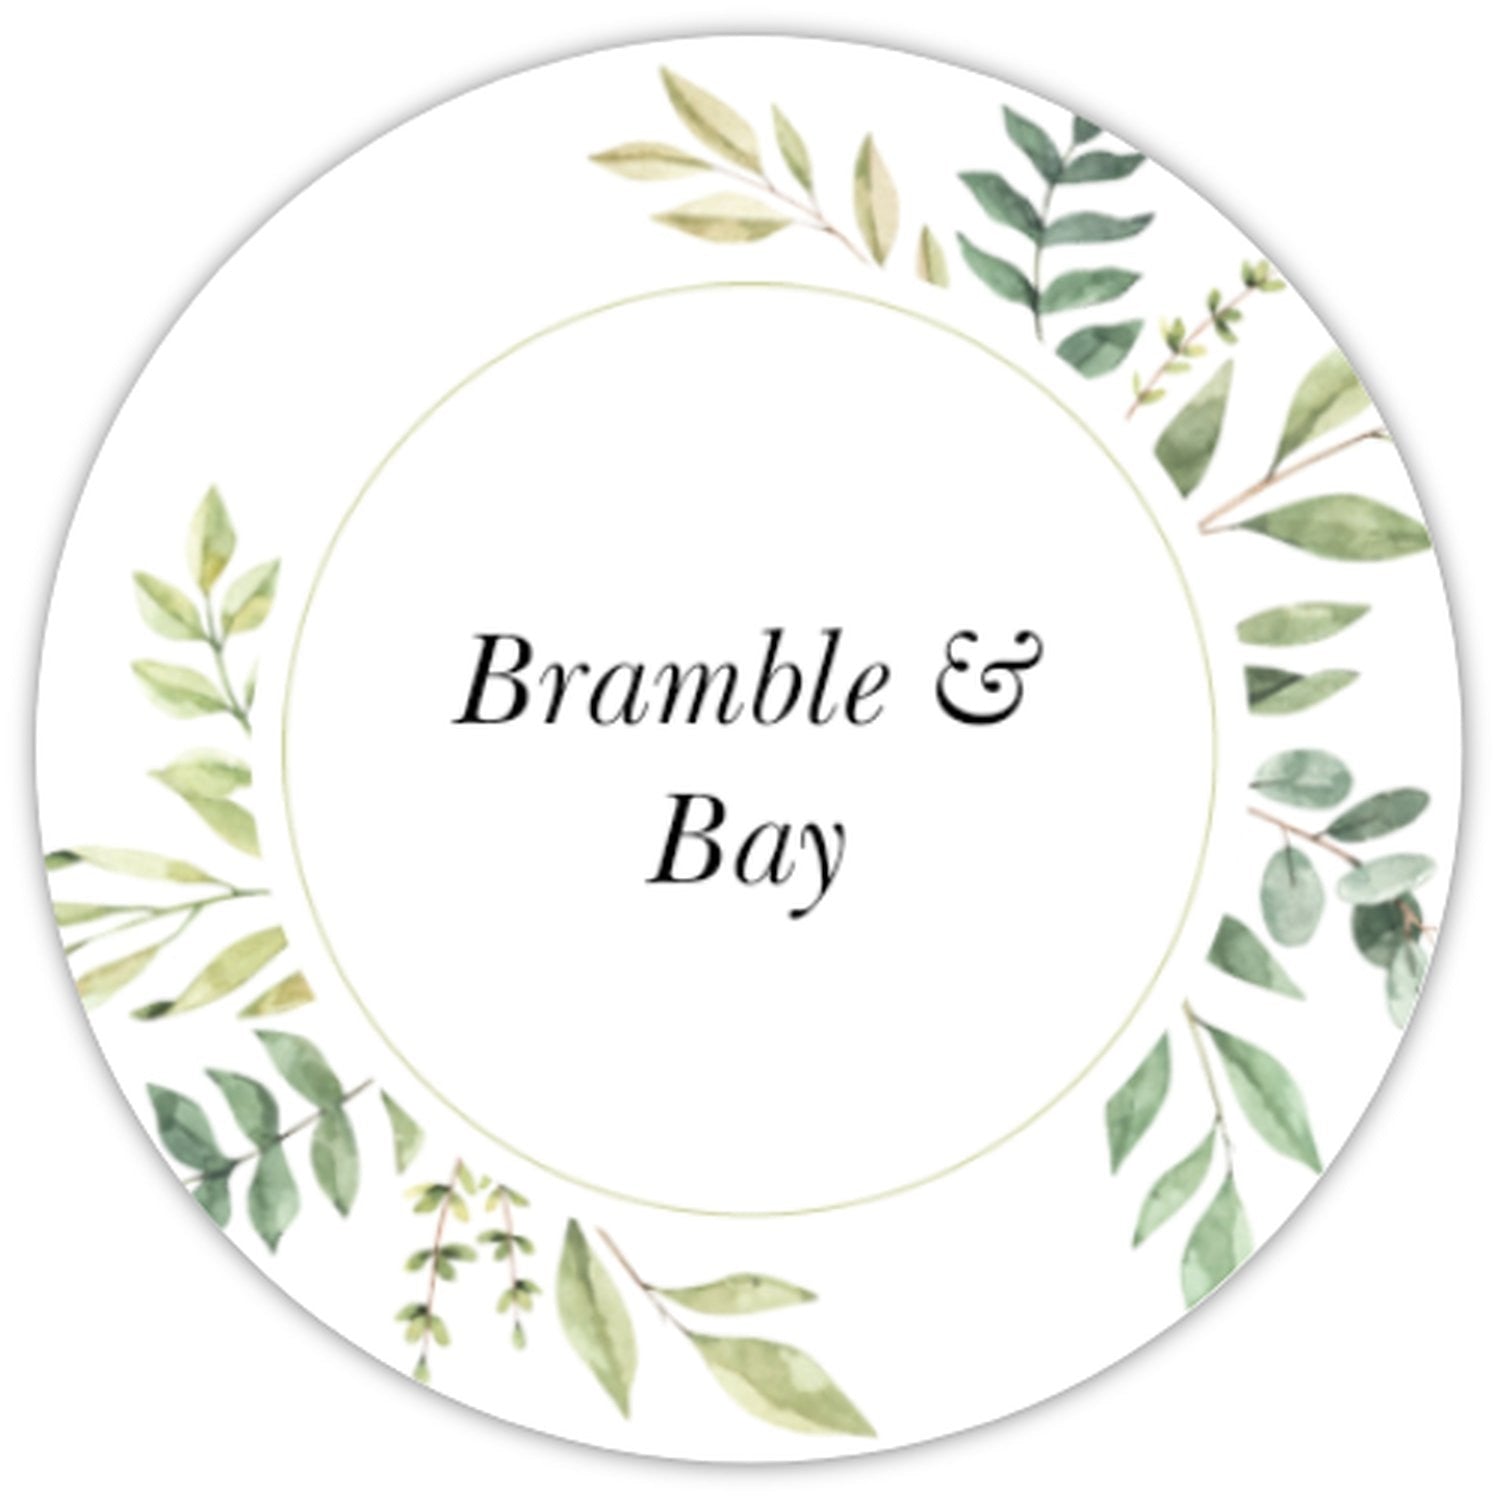 Bramble & Bay